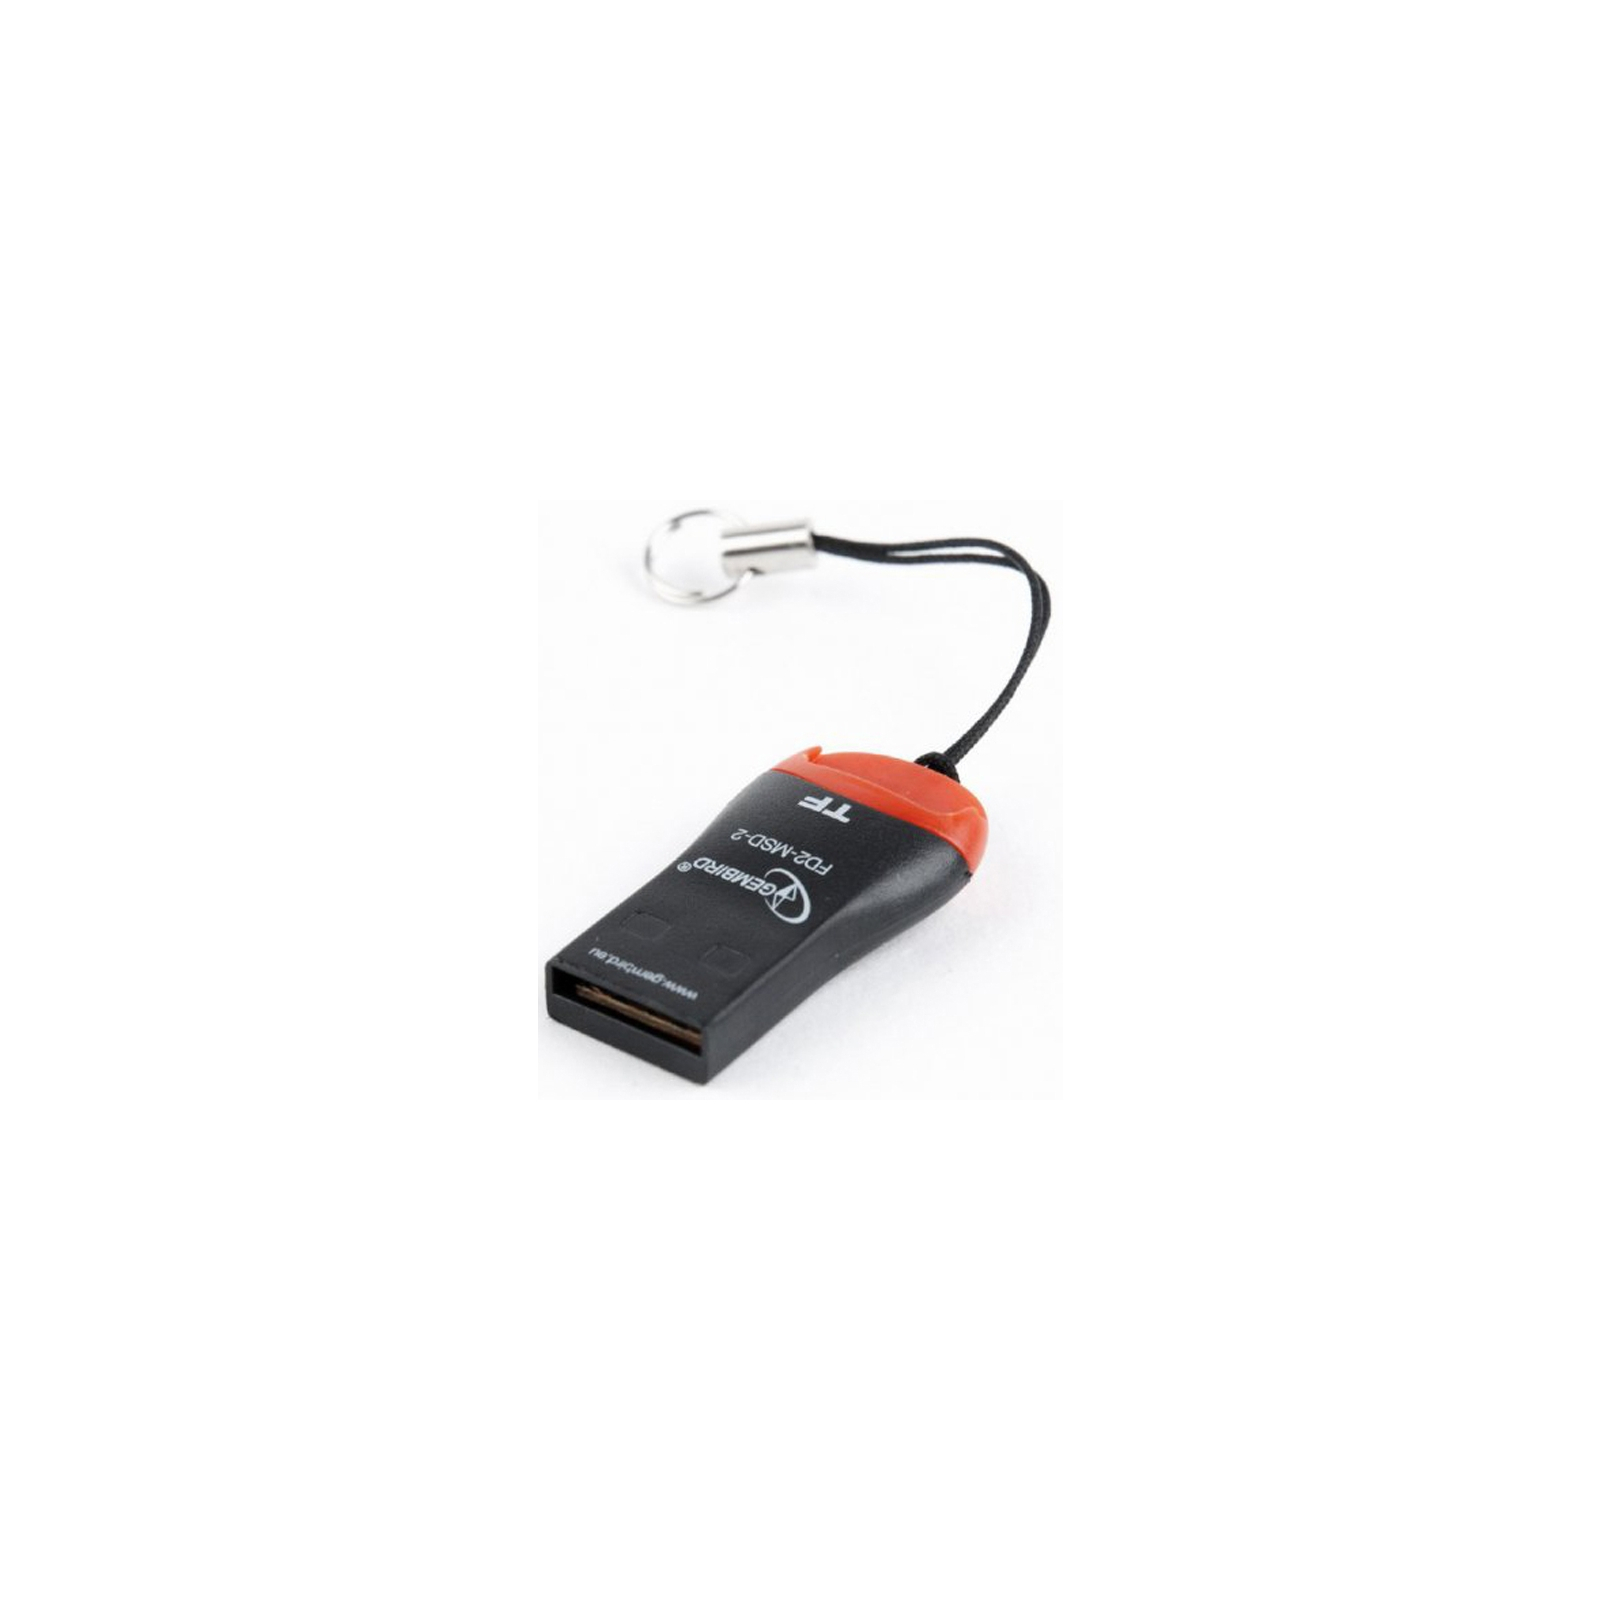 Зчитувач флеш-карт Gembird USB 2.0 MicroSD (FD2-MSD-3) зображення 2